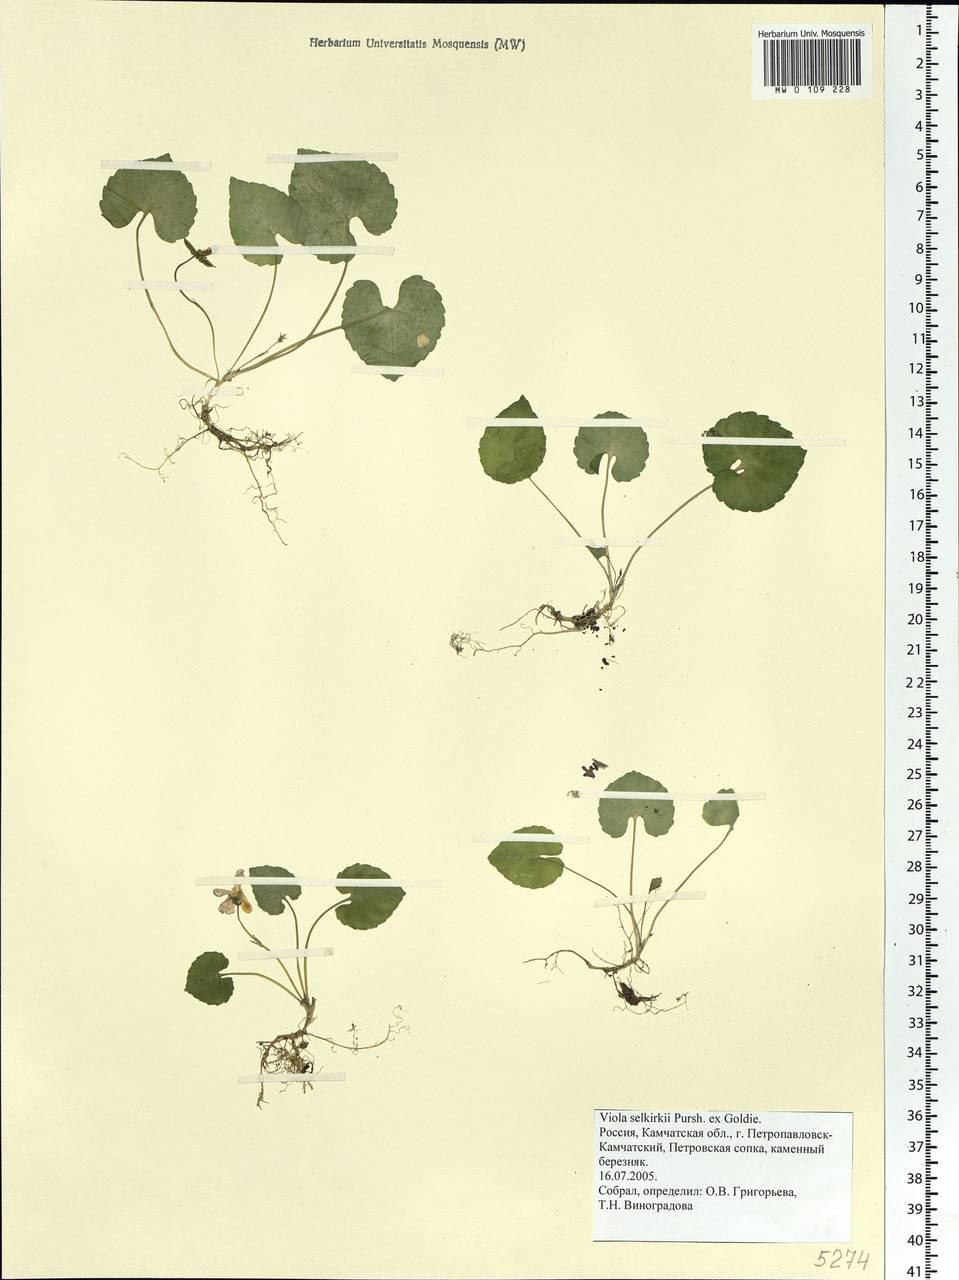 Viola selkirkii Pursh ex Goldie, Siberia, Chukotka & Kamchatka (S7) (Russia)